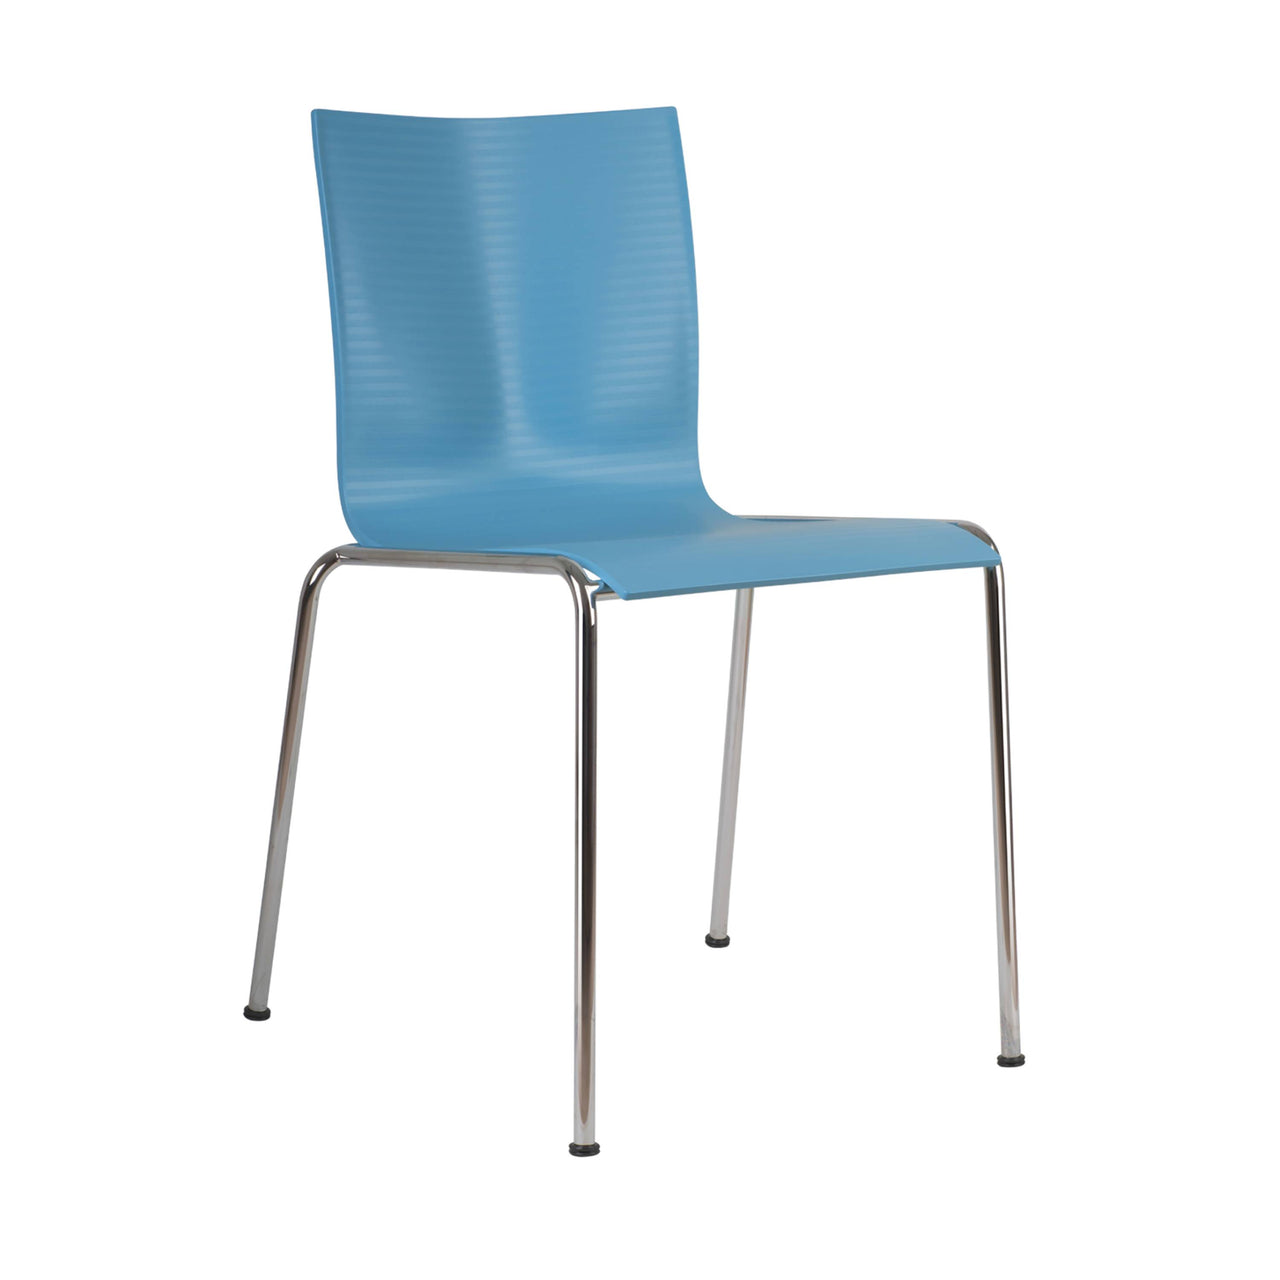 Chairik 101 Chair: Plastic + Pastel Blue